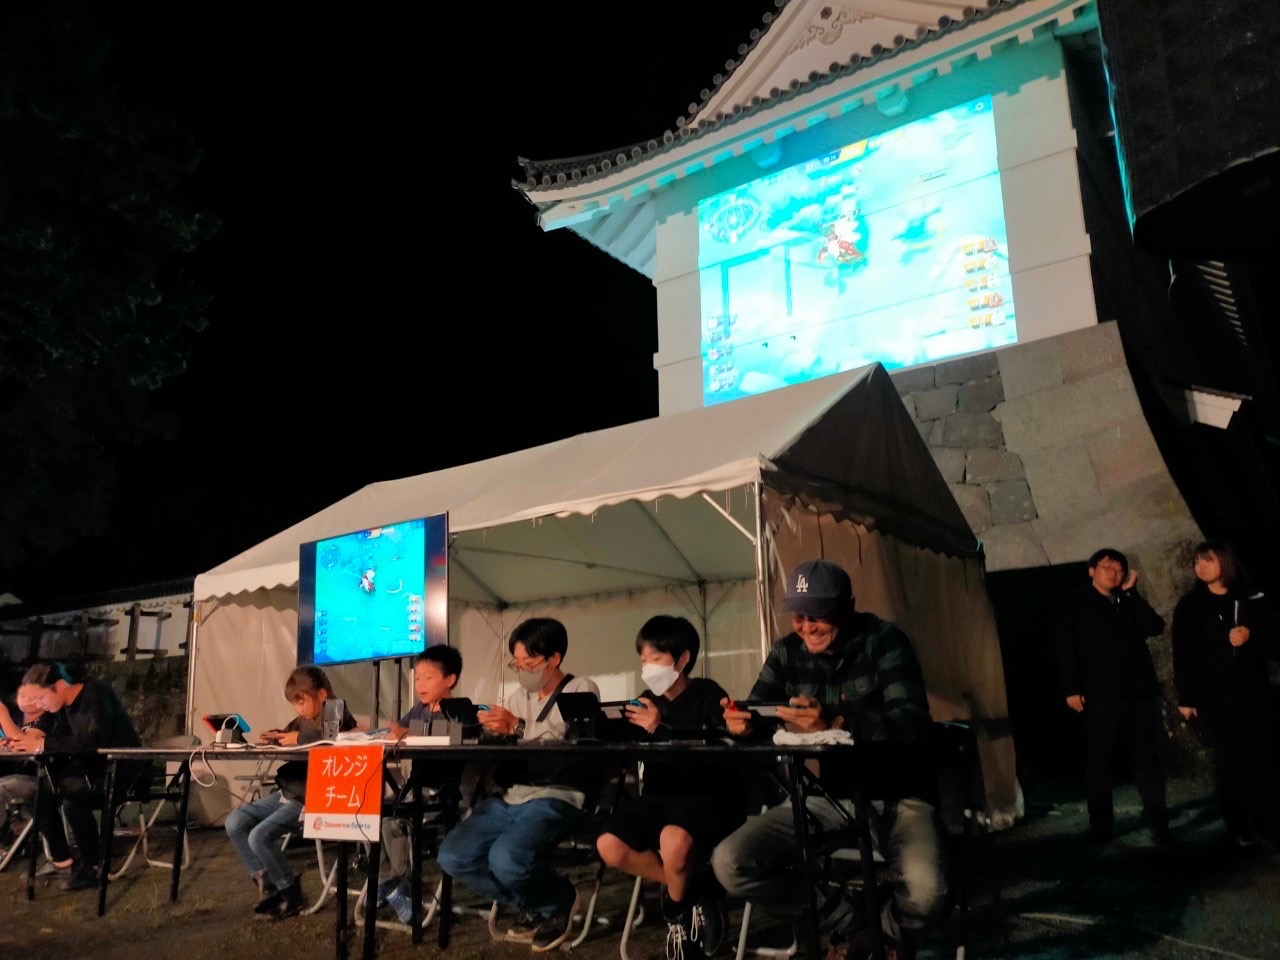 小田原eスポーツ-秋夜の宴-の第二部の画像です。